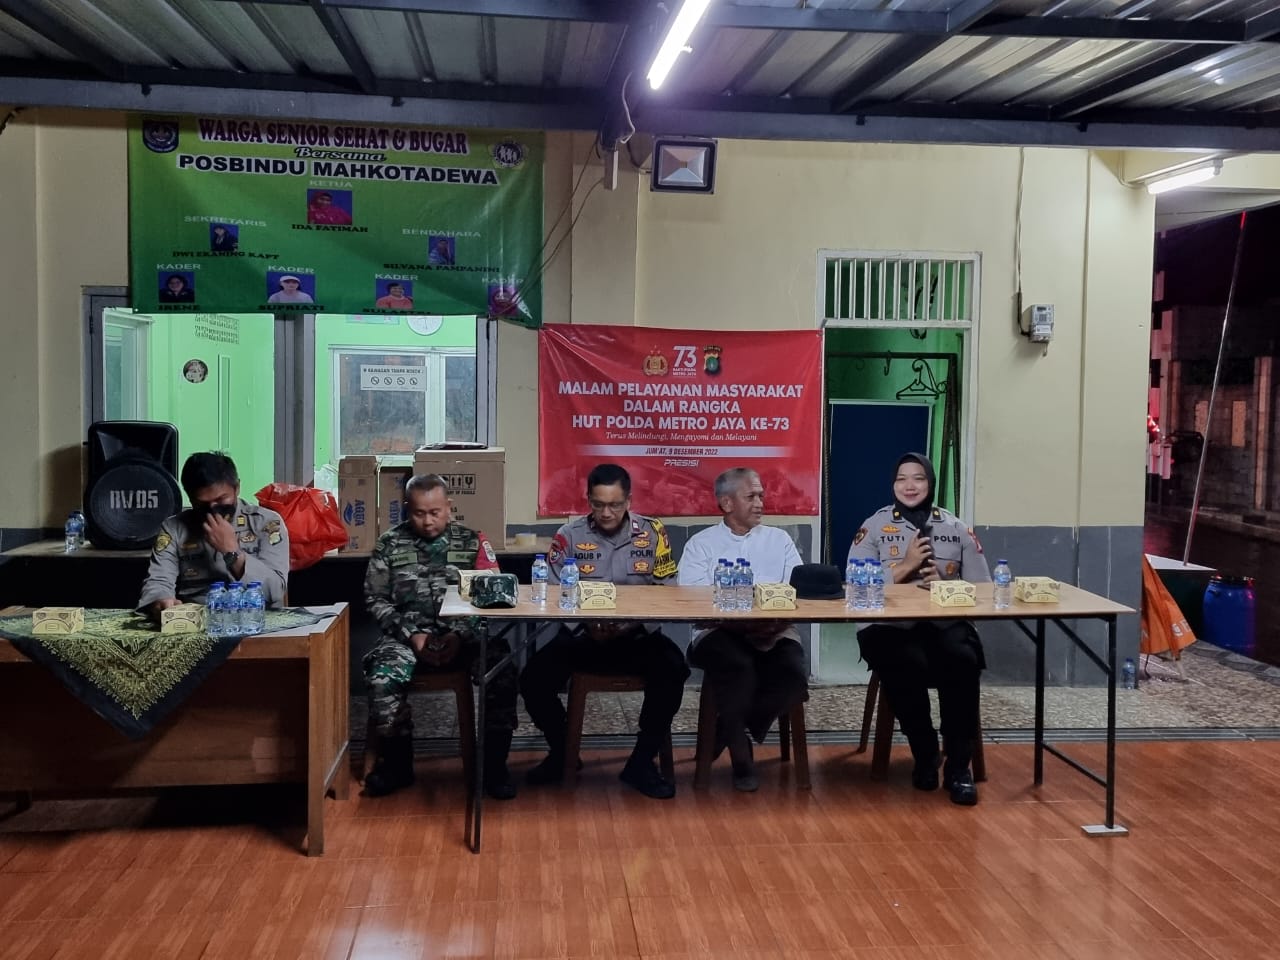 Dalam Ranga HUT Polda Metro Jaya Ke-73, Polres Depok Selenggarakan Malam Pelayanan Mayarakat